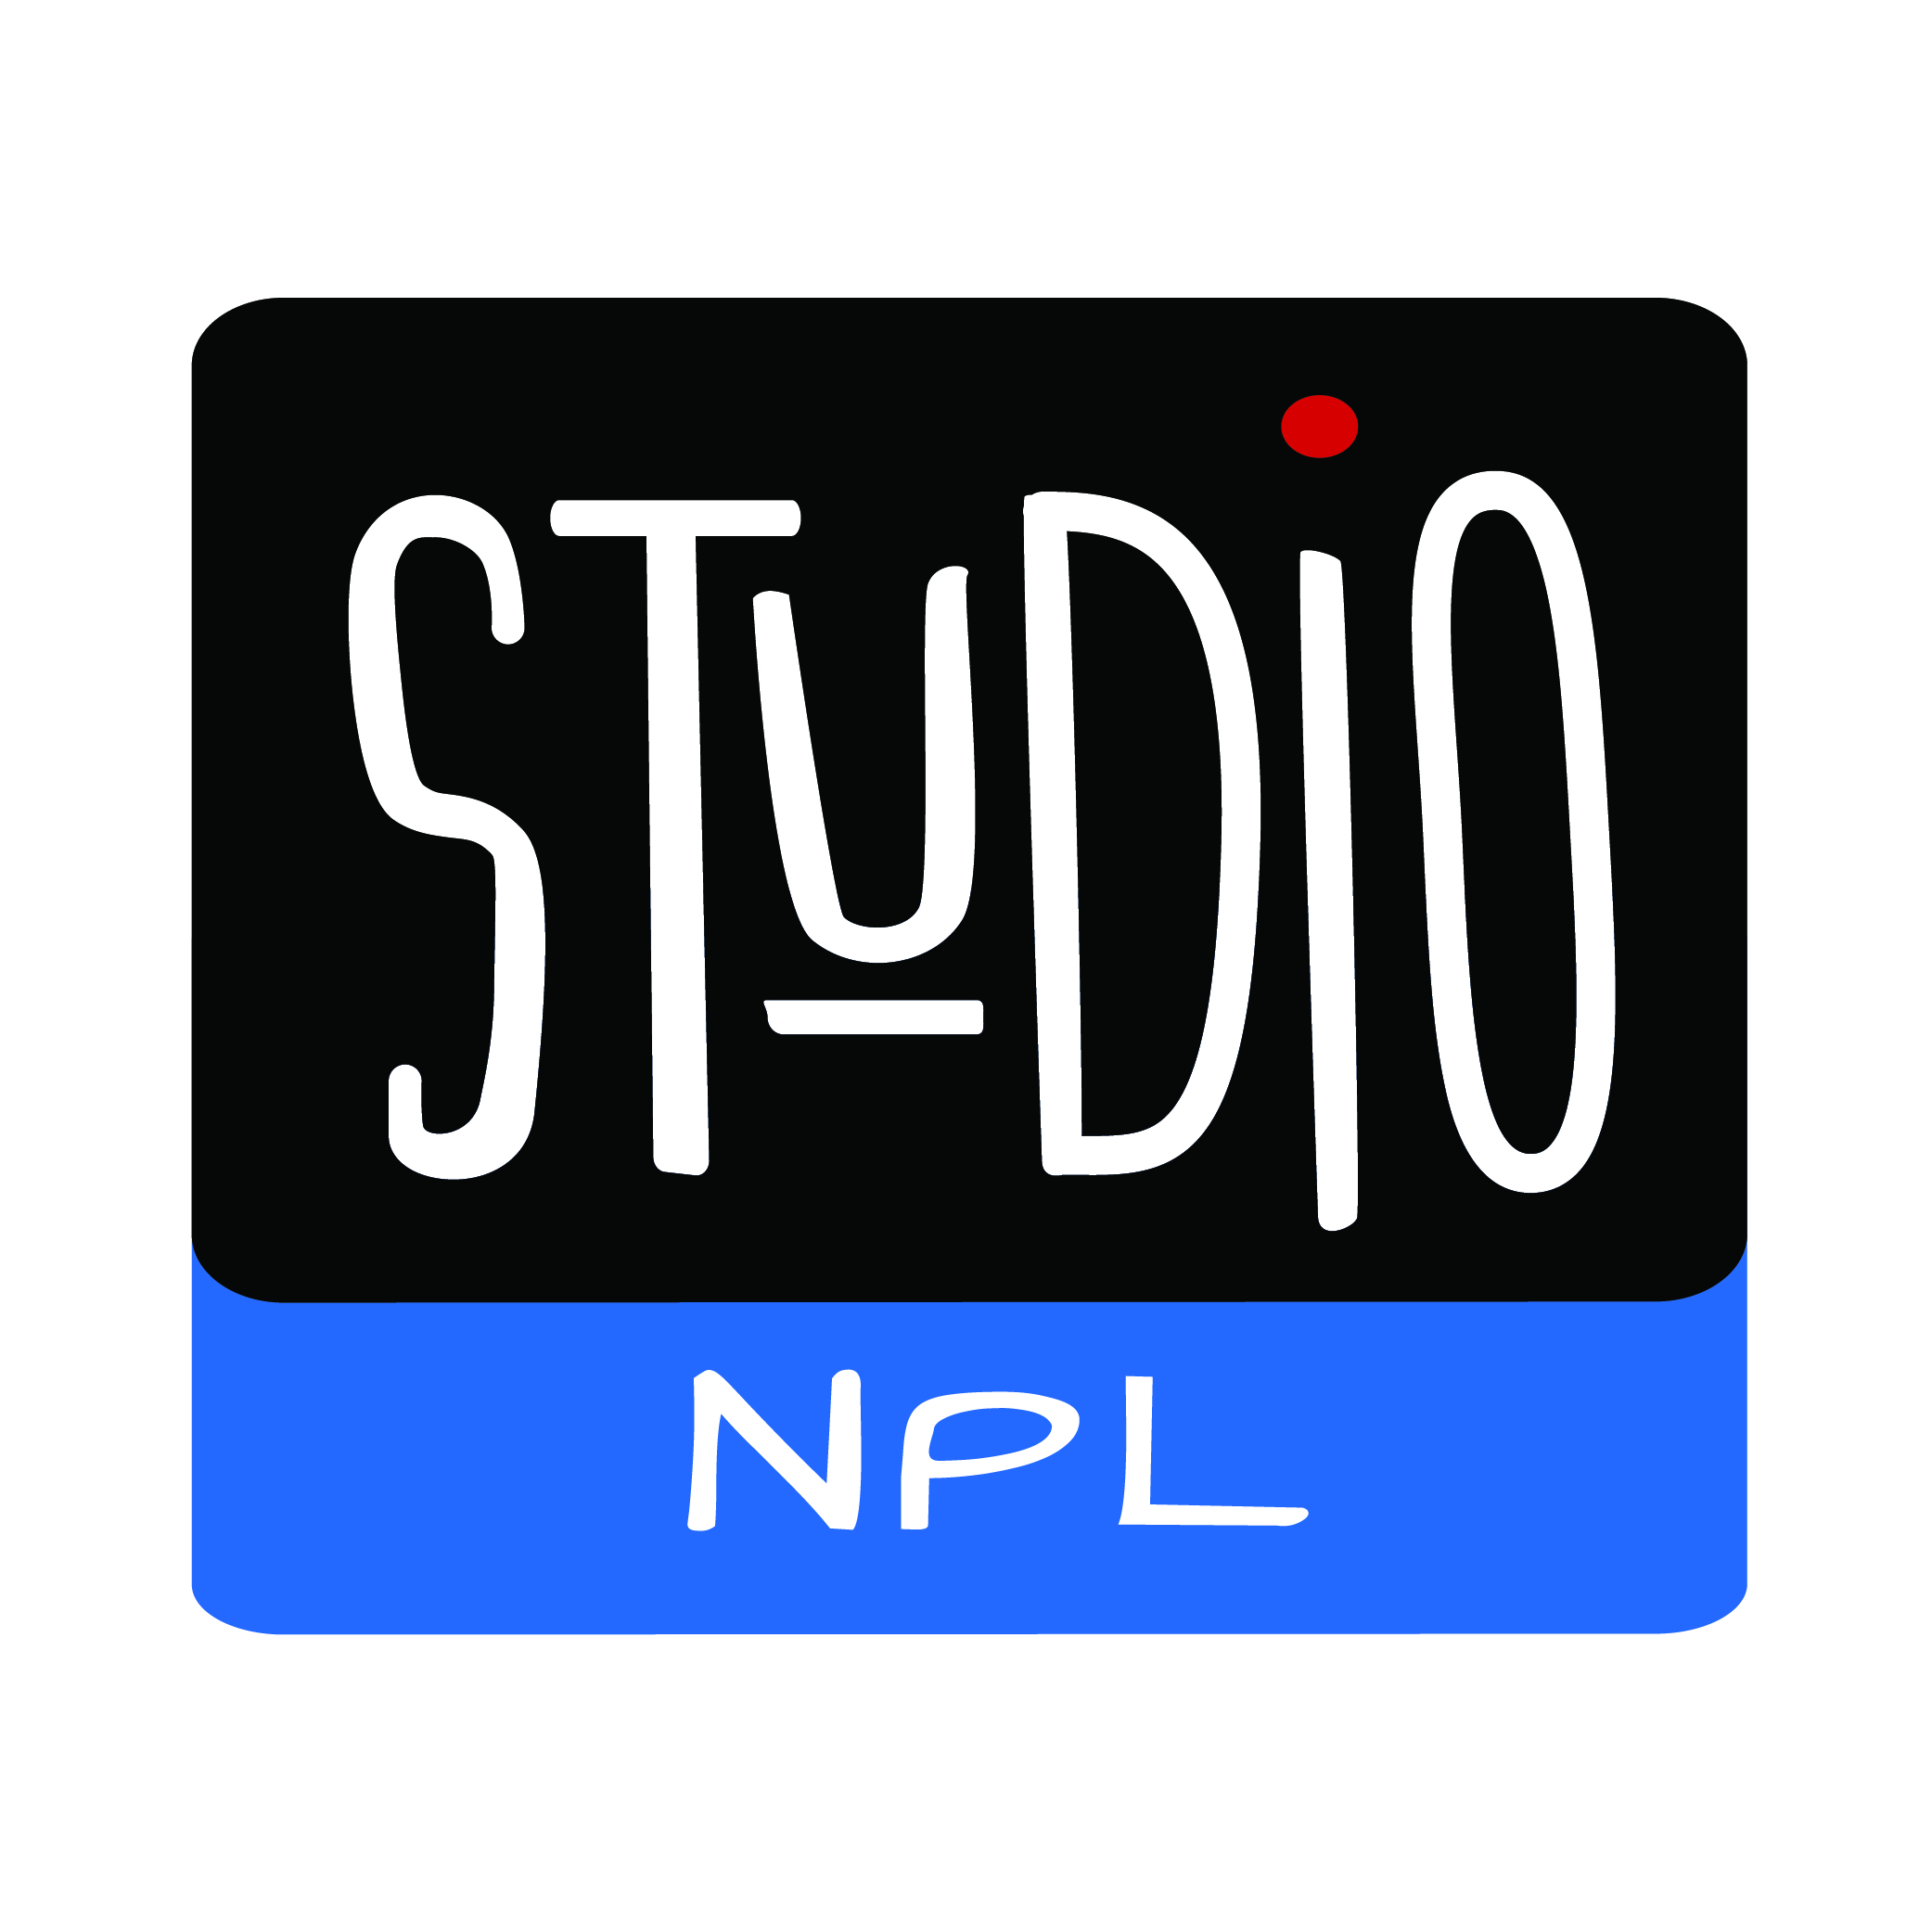 Studio NPL logo